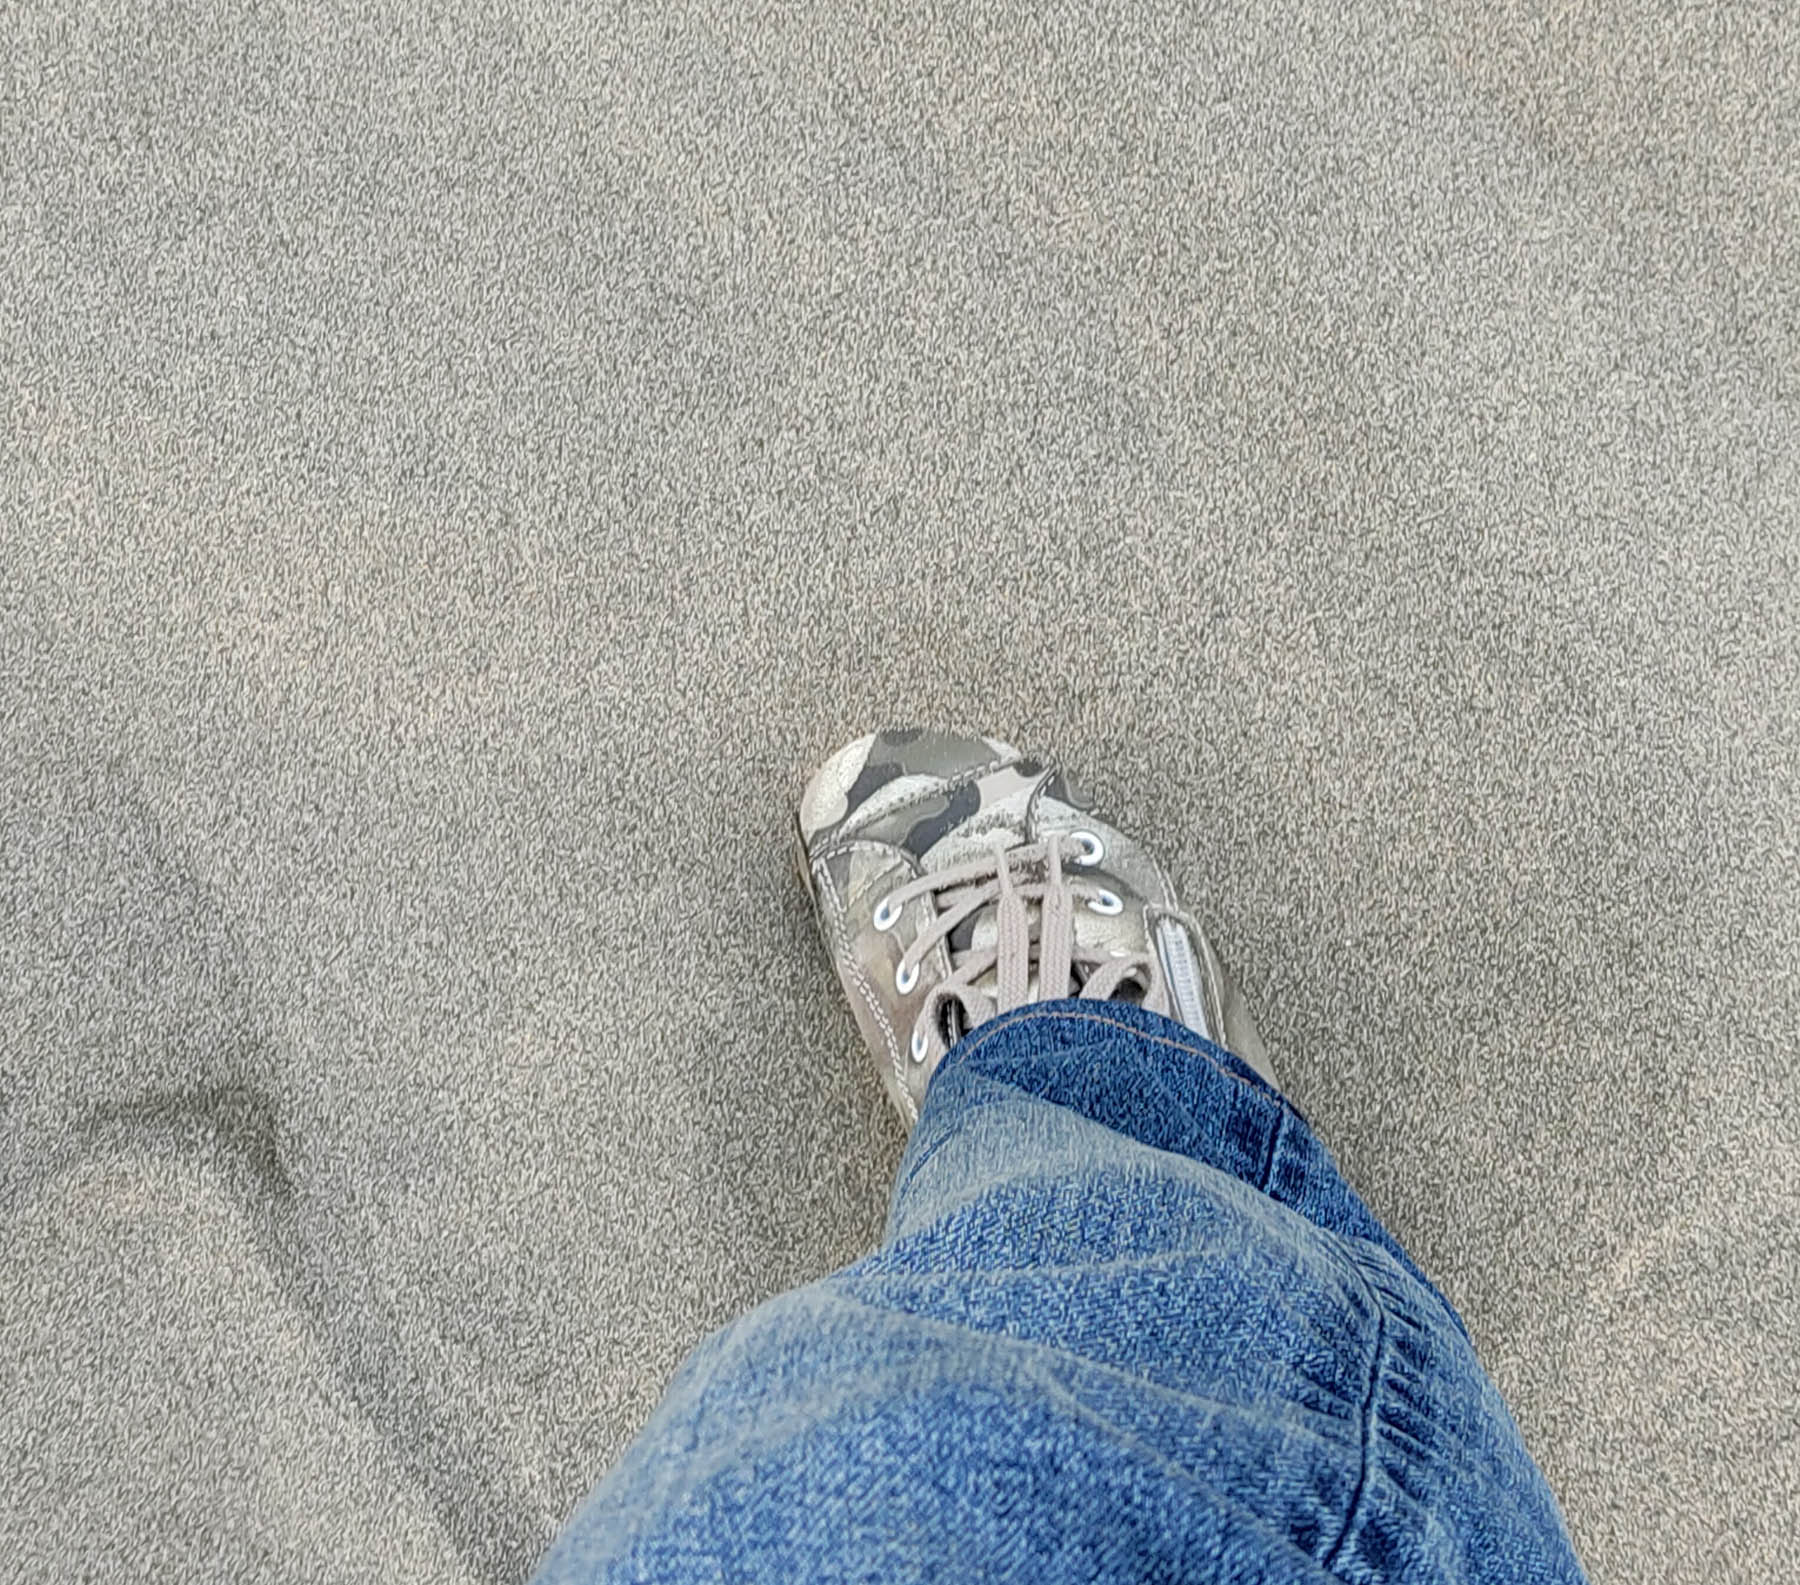 砂に足を取られる図